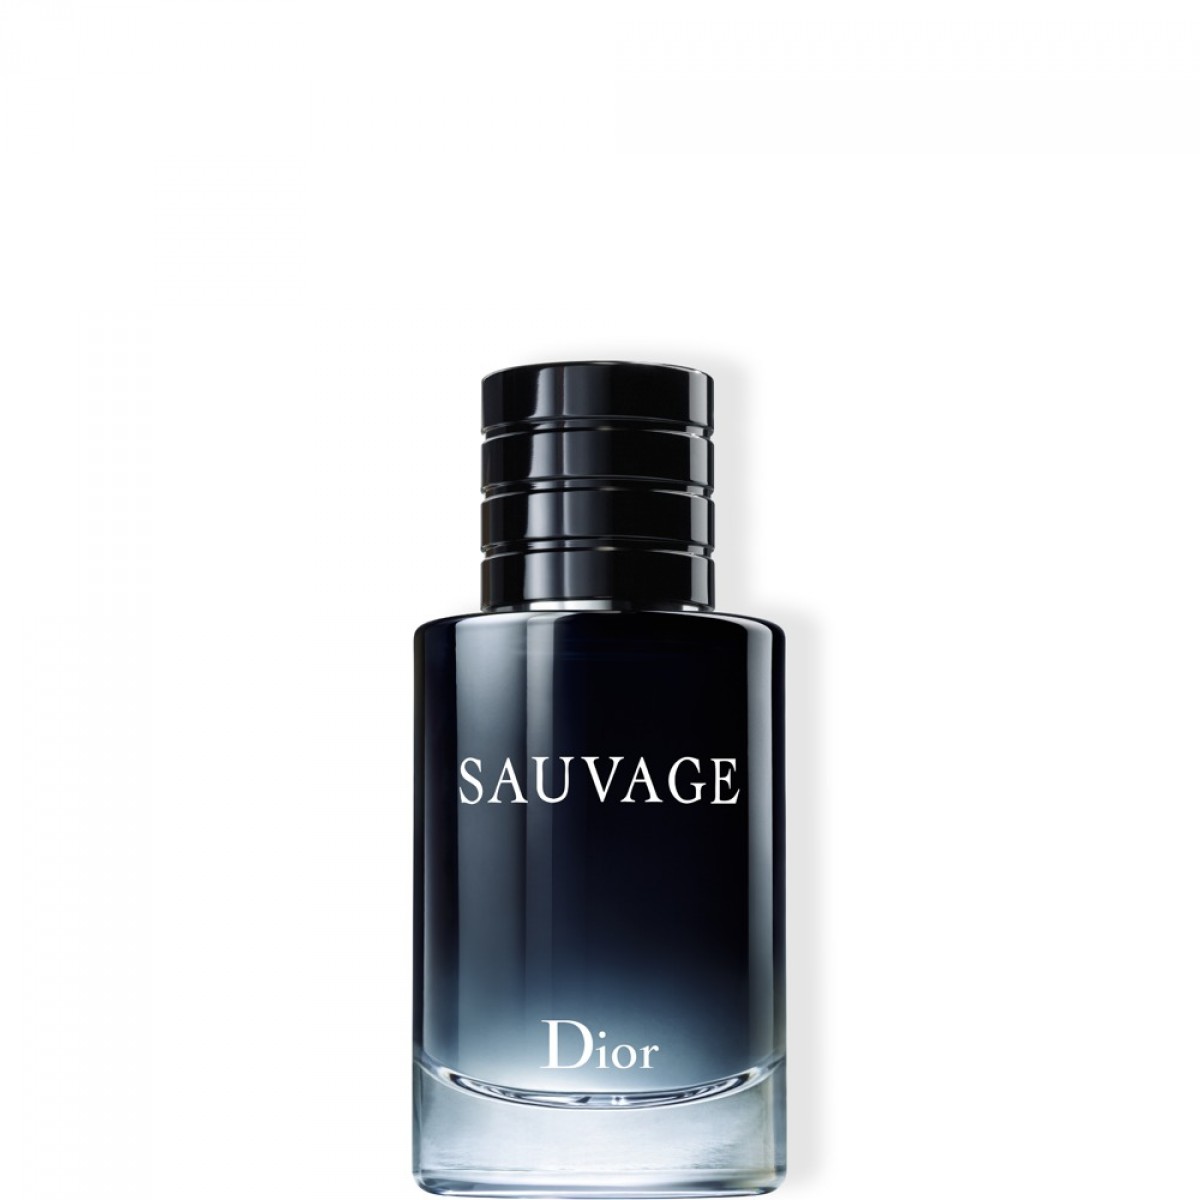 Sauvage - Aelia Duty Free 10% off on 